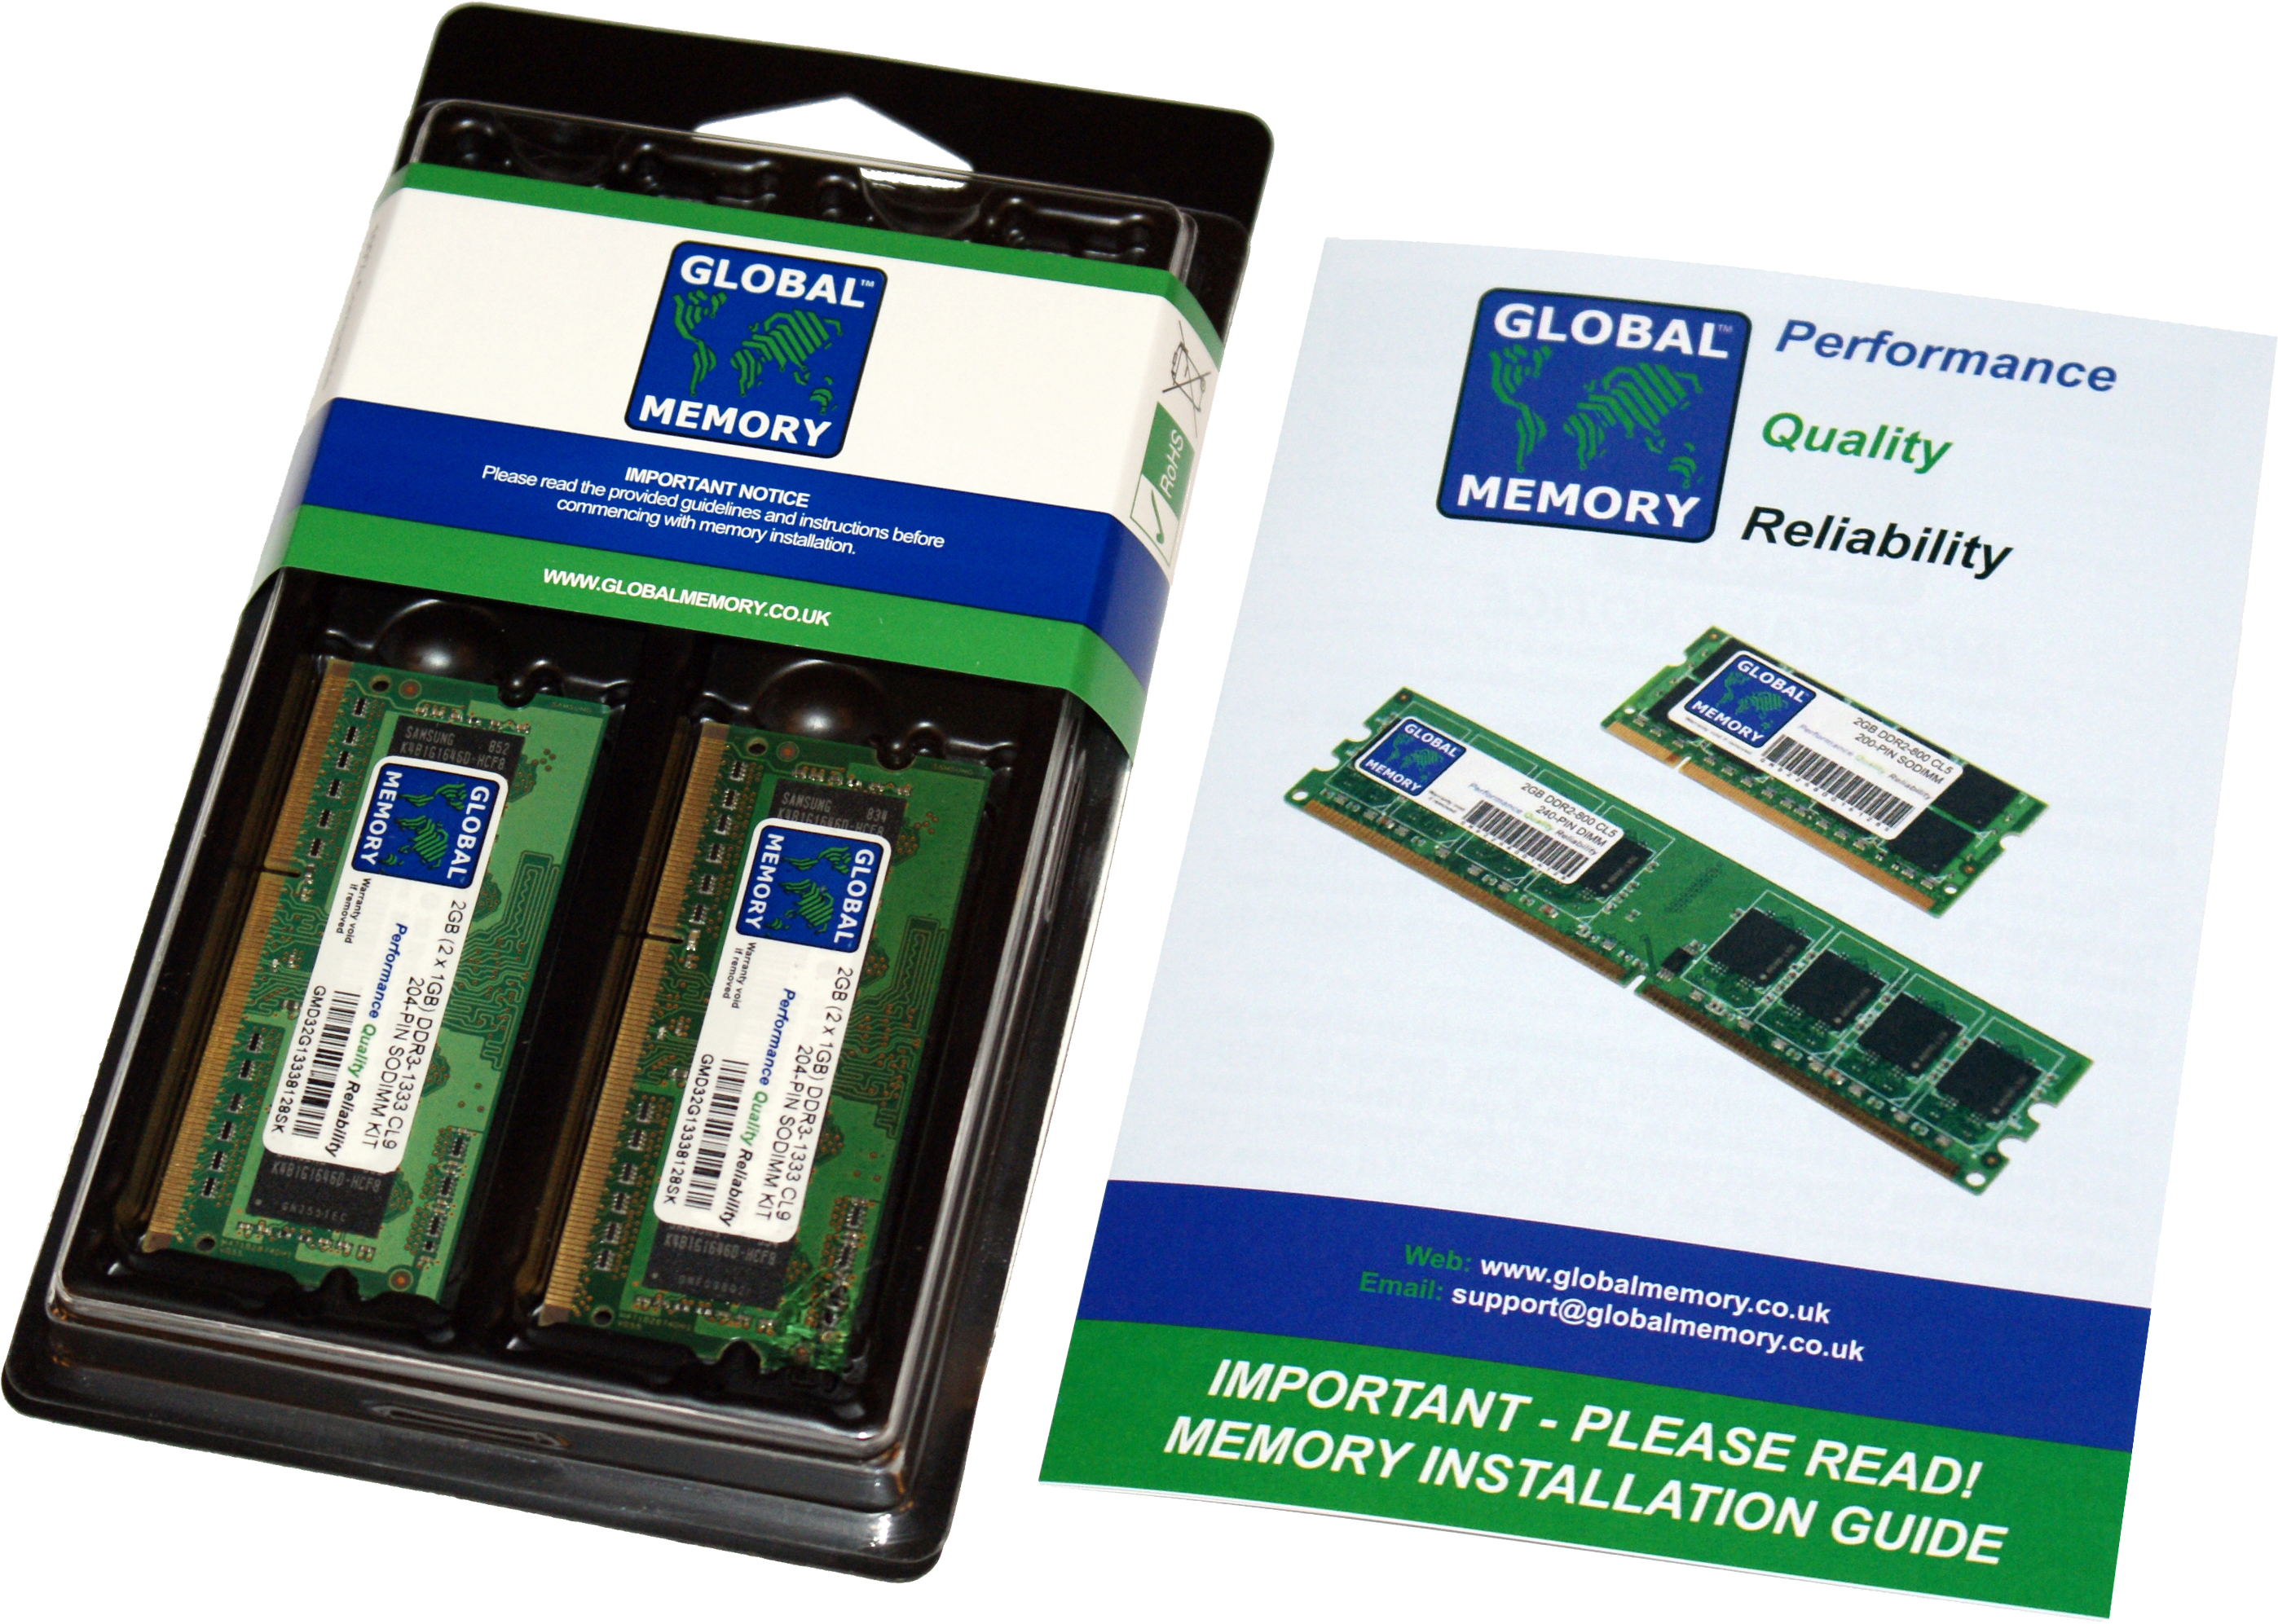 8GB (2 x 4GB) DDR4 2133MHz PC4-17000 260-PIN SODIMM MEMORY RAM KIT FOR FUJITSU LAPTOPS/NOTEBOOKS